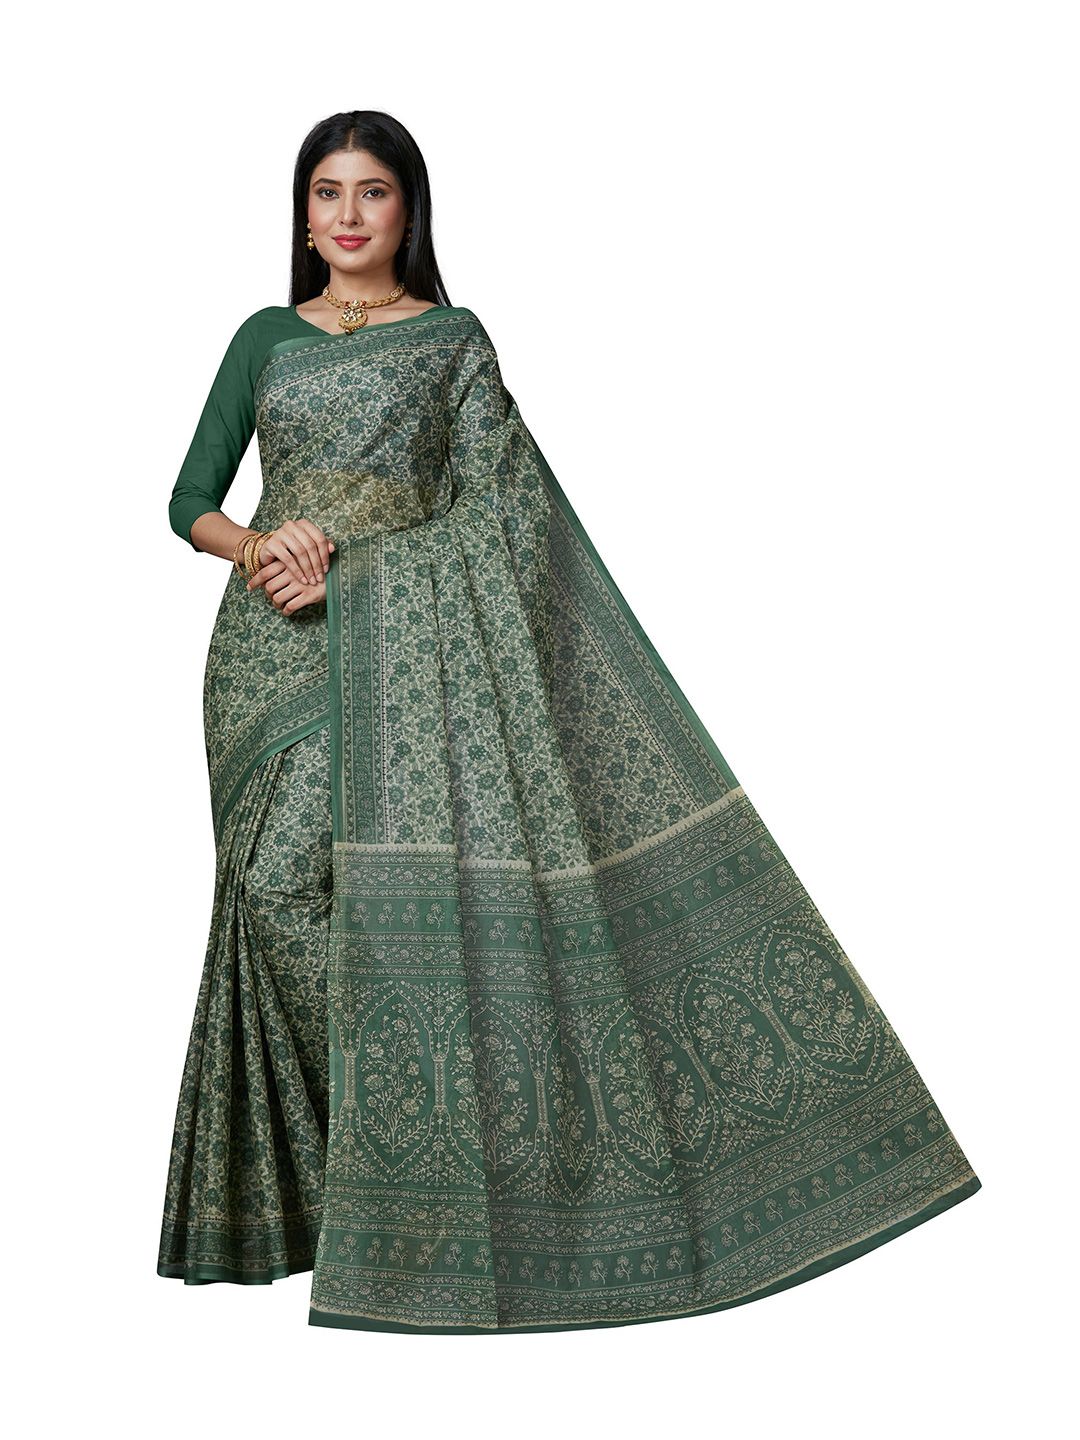 SHANVIKA Green & Cream-Coloured Floral Pure Cotton  Block Print Saree Price in India